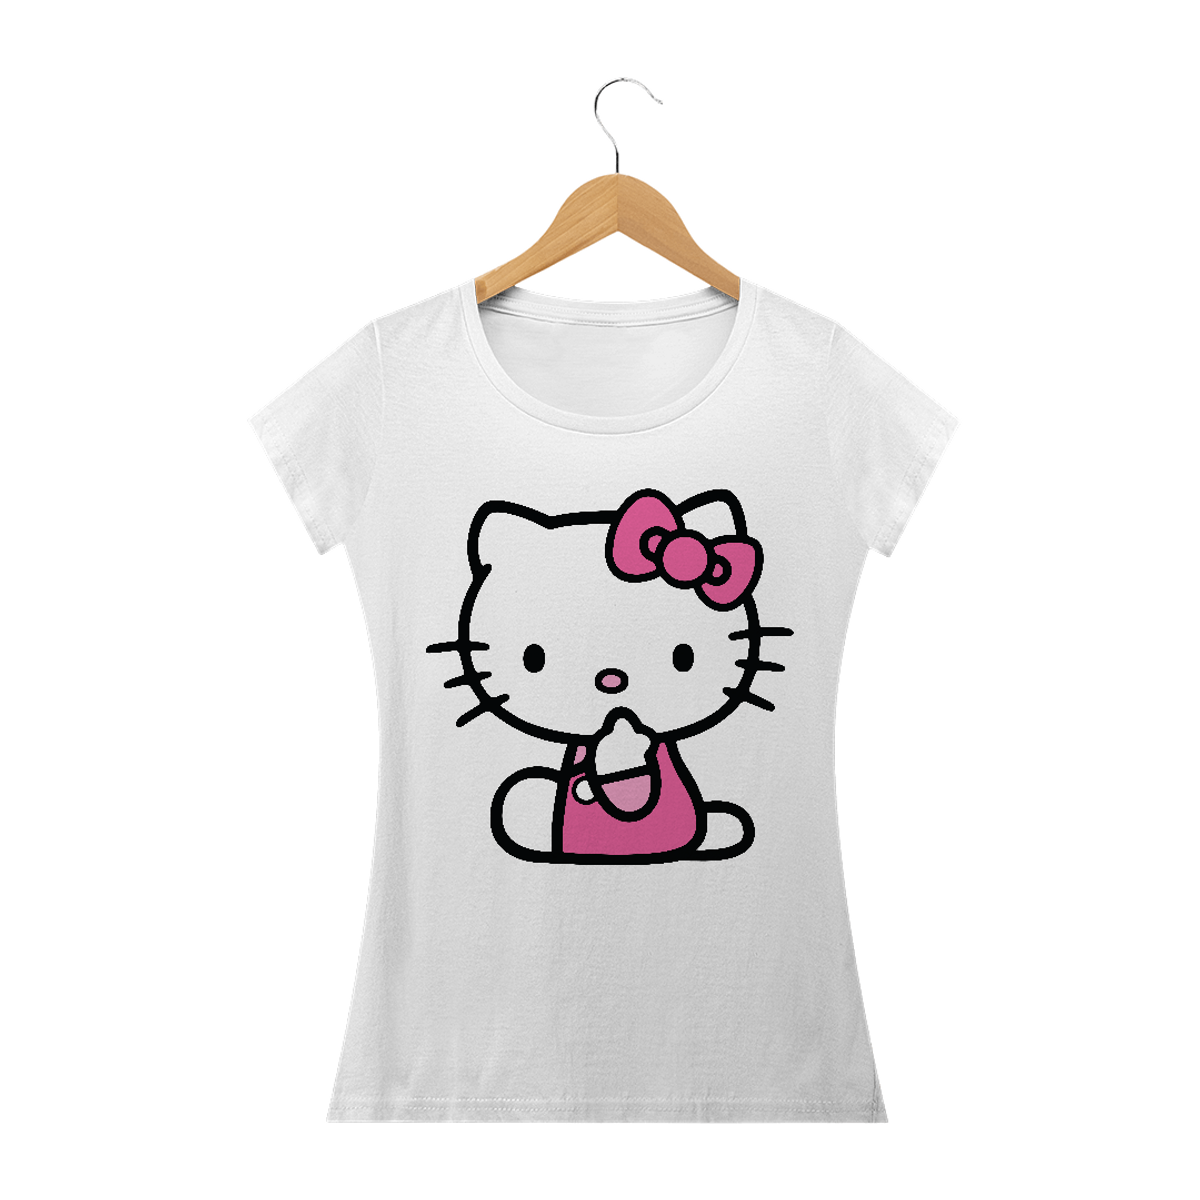 Nome do produto: Hello Kitty 02